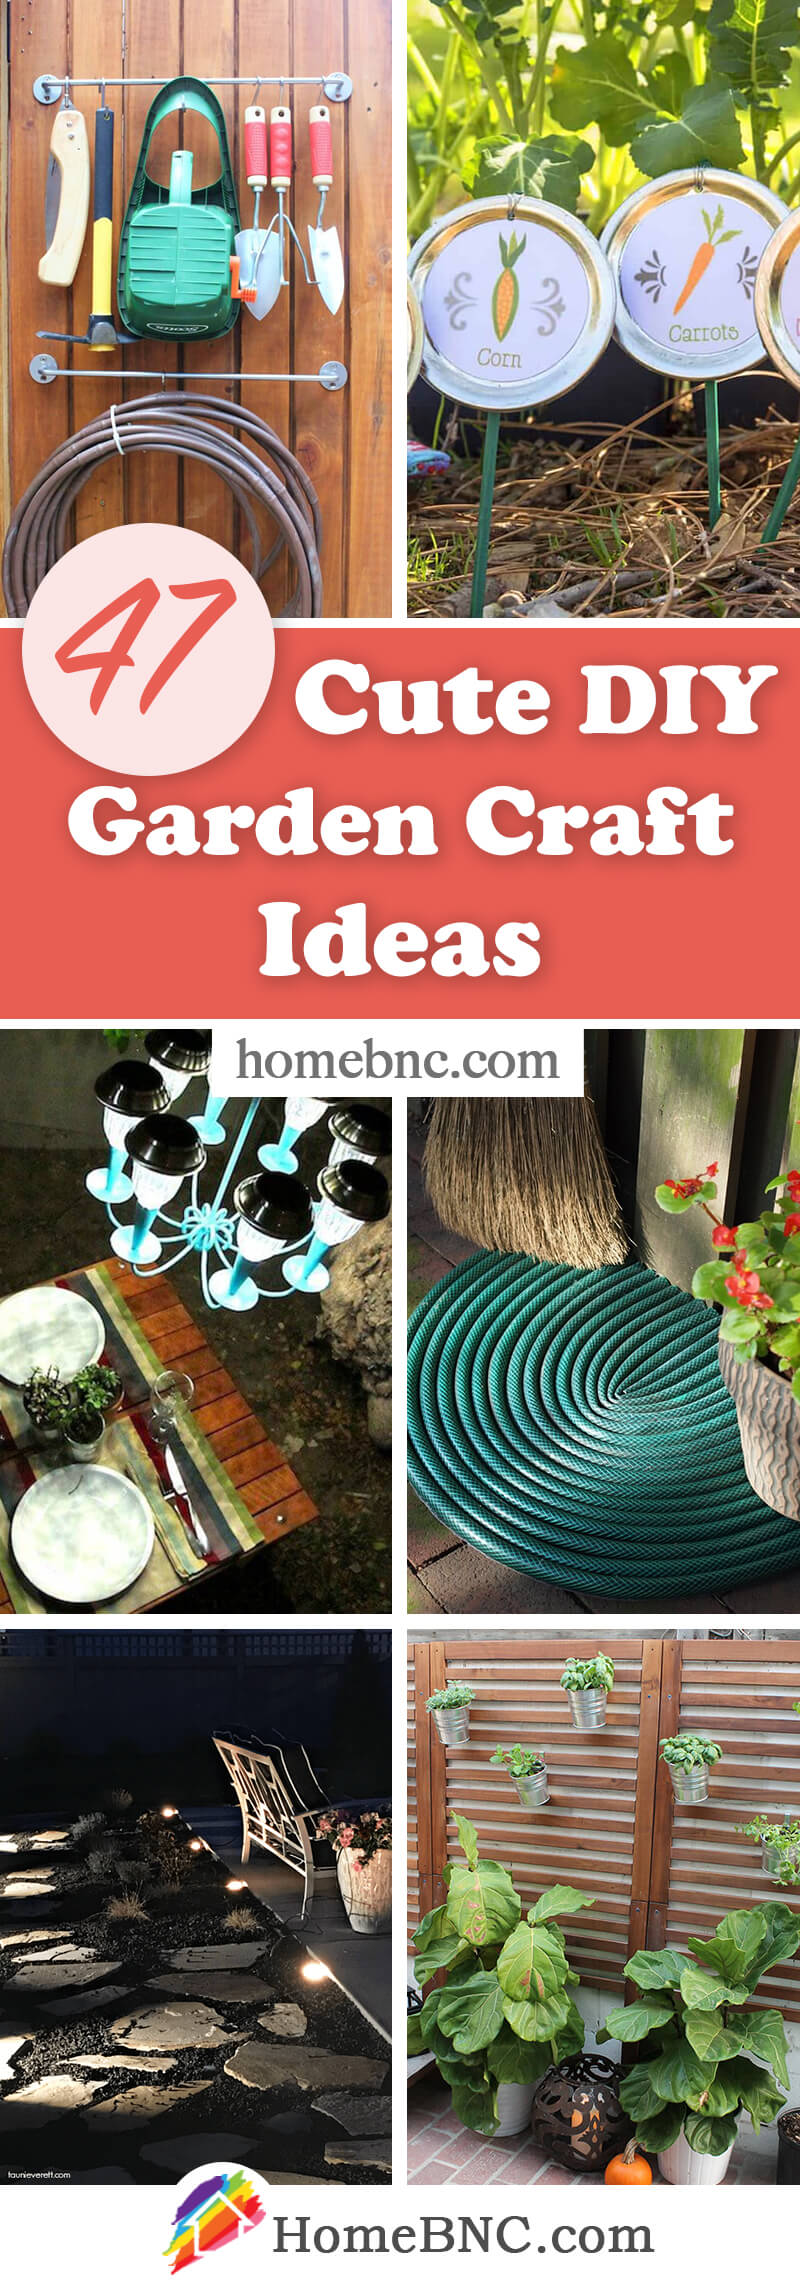 DIY Garden Crafts